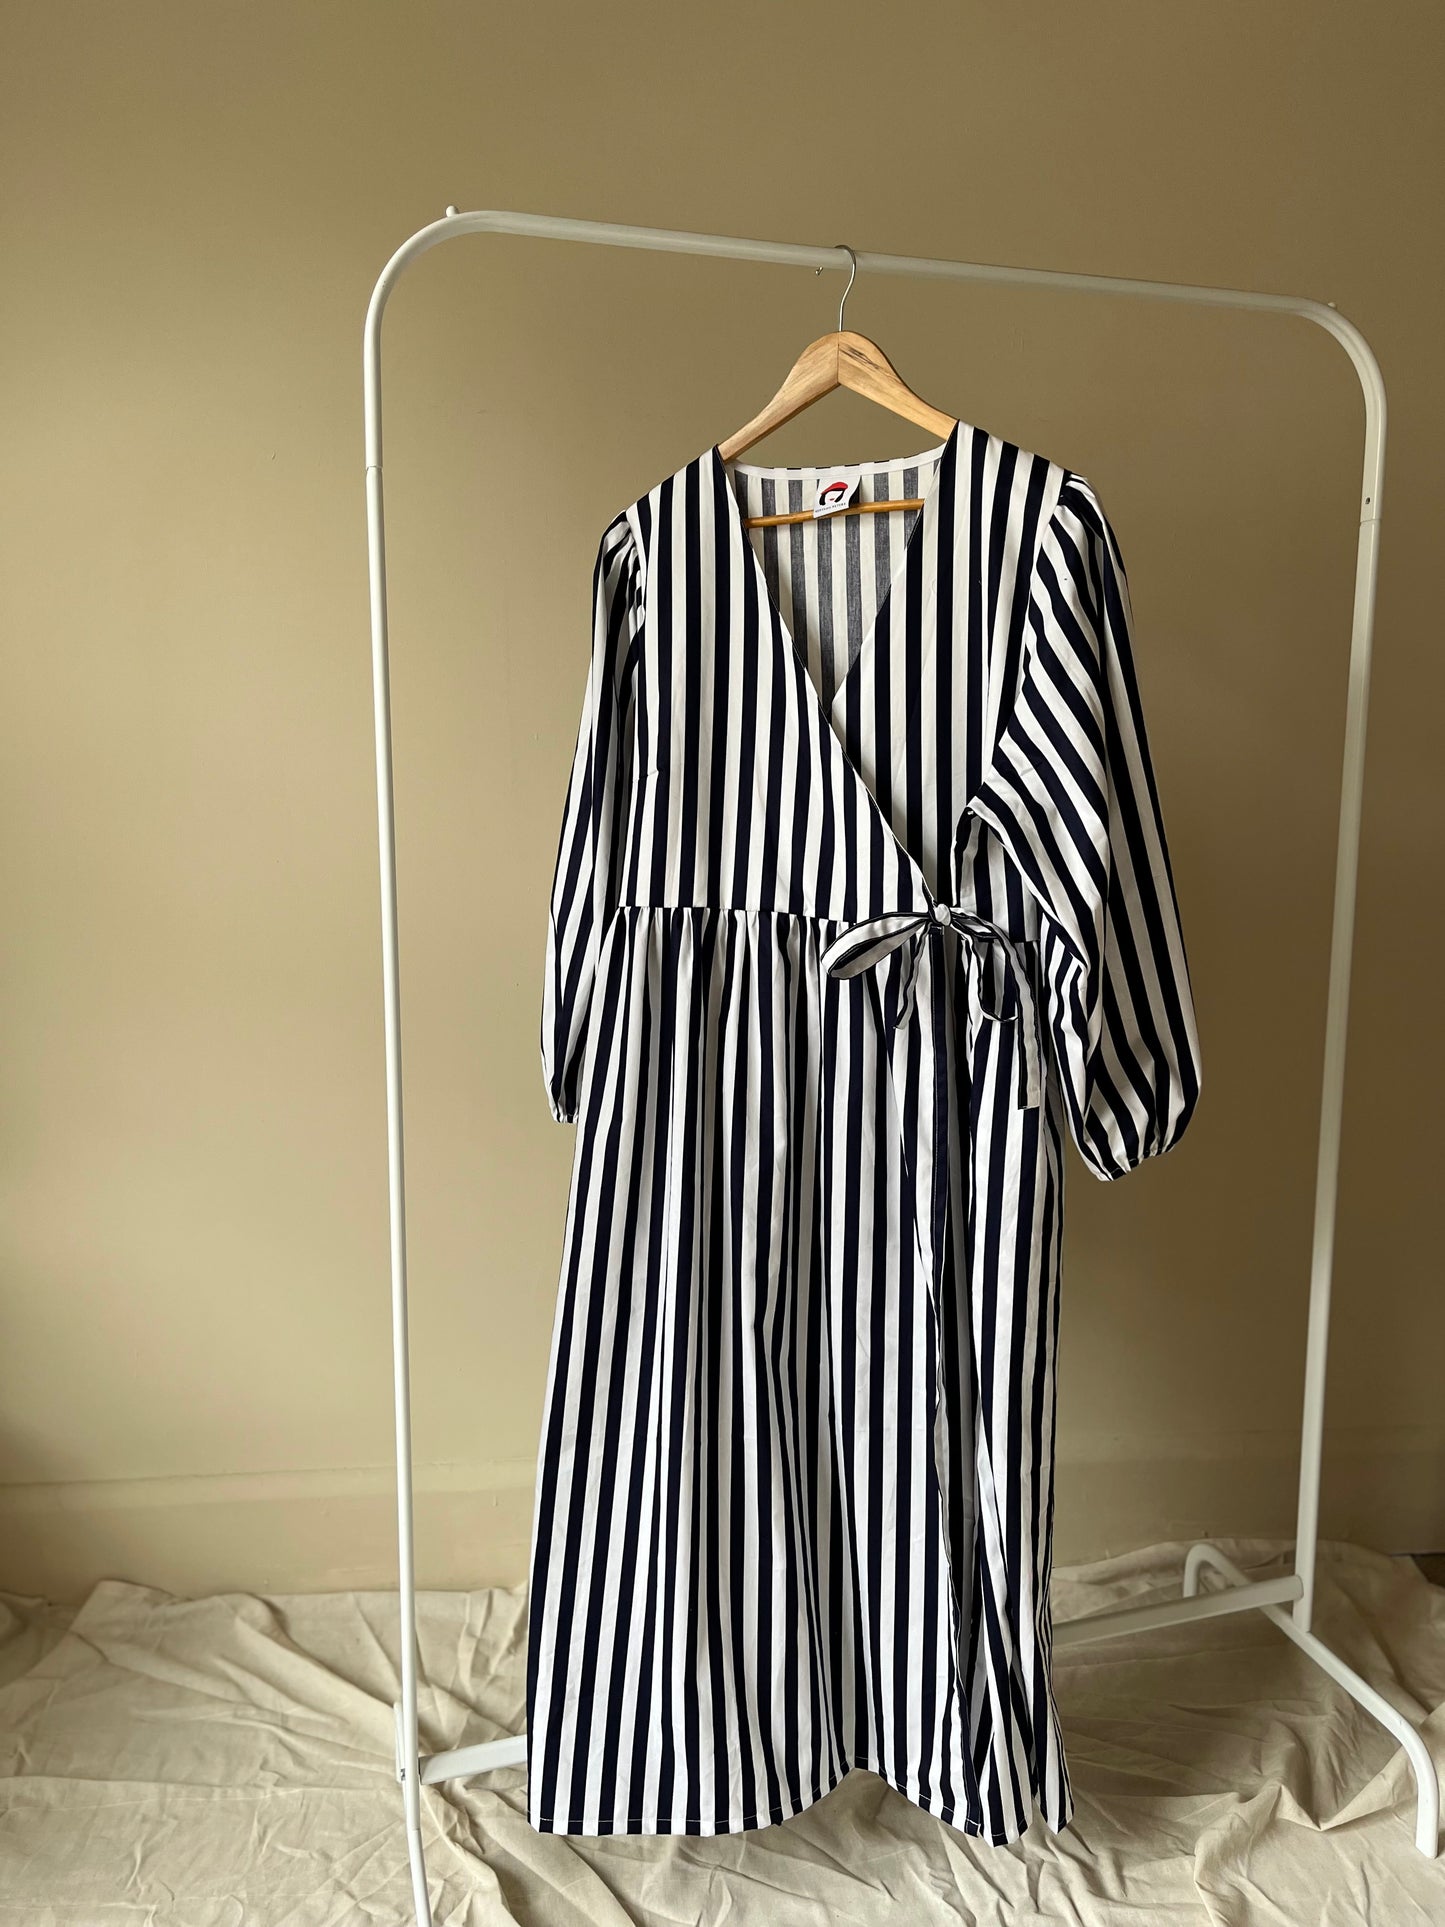 Heather wrap dress in navy stripe size XL